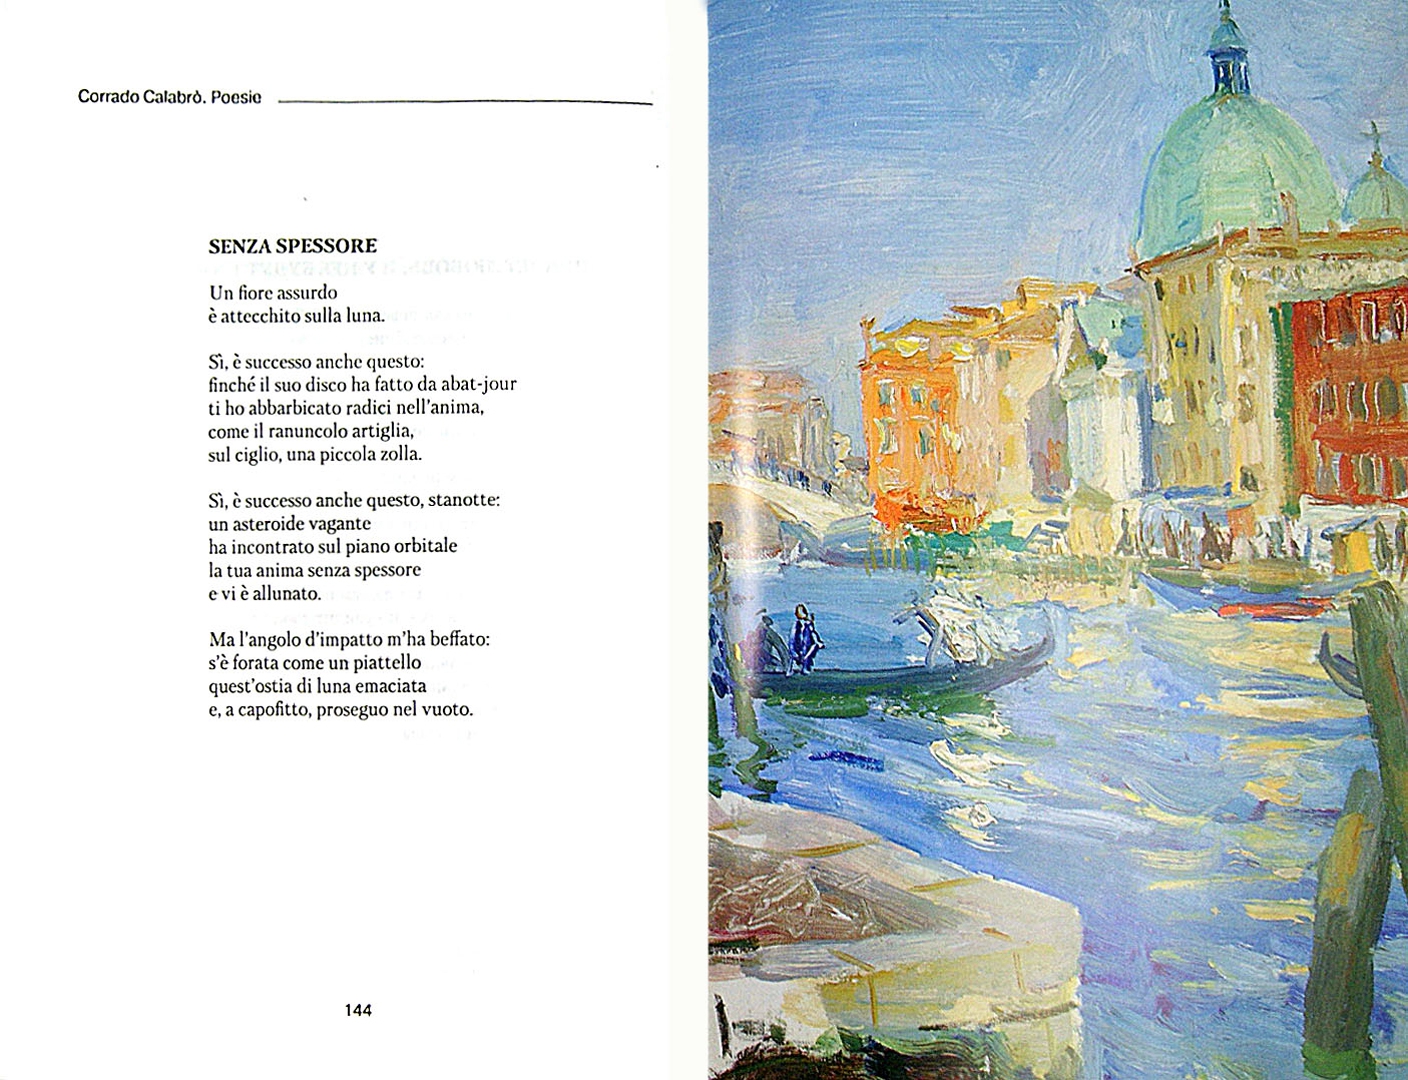 Иллюстрация 1 из 46 для Поэзия=Poesie - Коррадо Калабро | Лабиринт - книги. Источник: Лабиринт